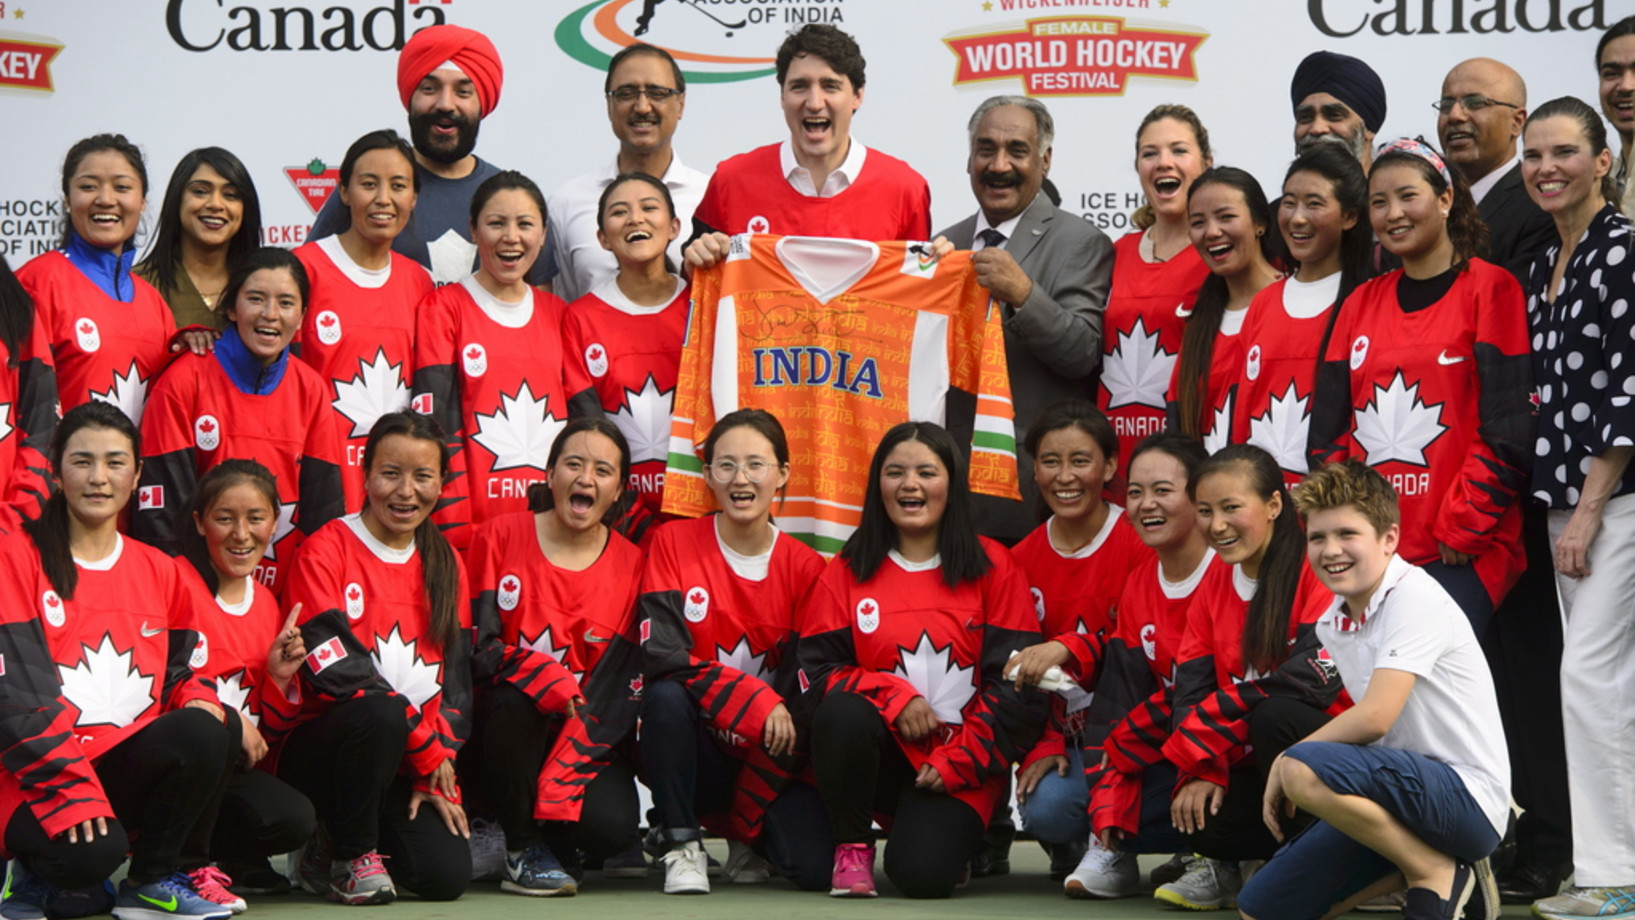 Der kanadische Premier Justin Trudeau mit dem indischen Nationalteam im Frauen-Eishockey am 24. Februar in New Delhi  (Keystone/The Canadian Press via AP, Sean Kilpatrick)
